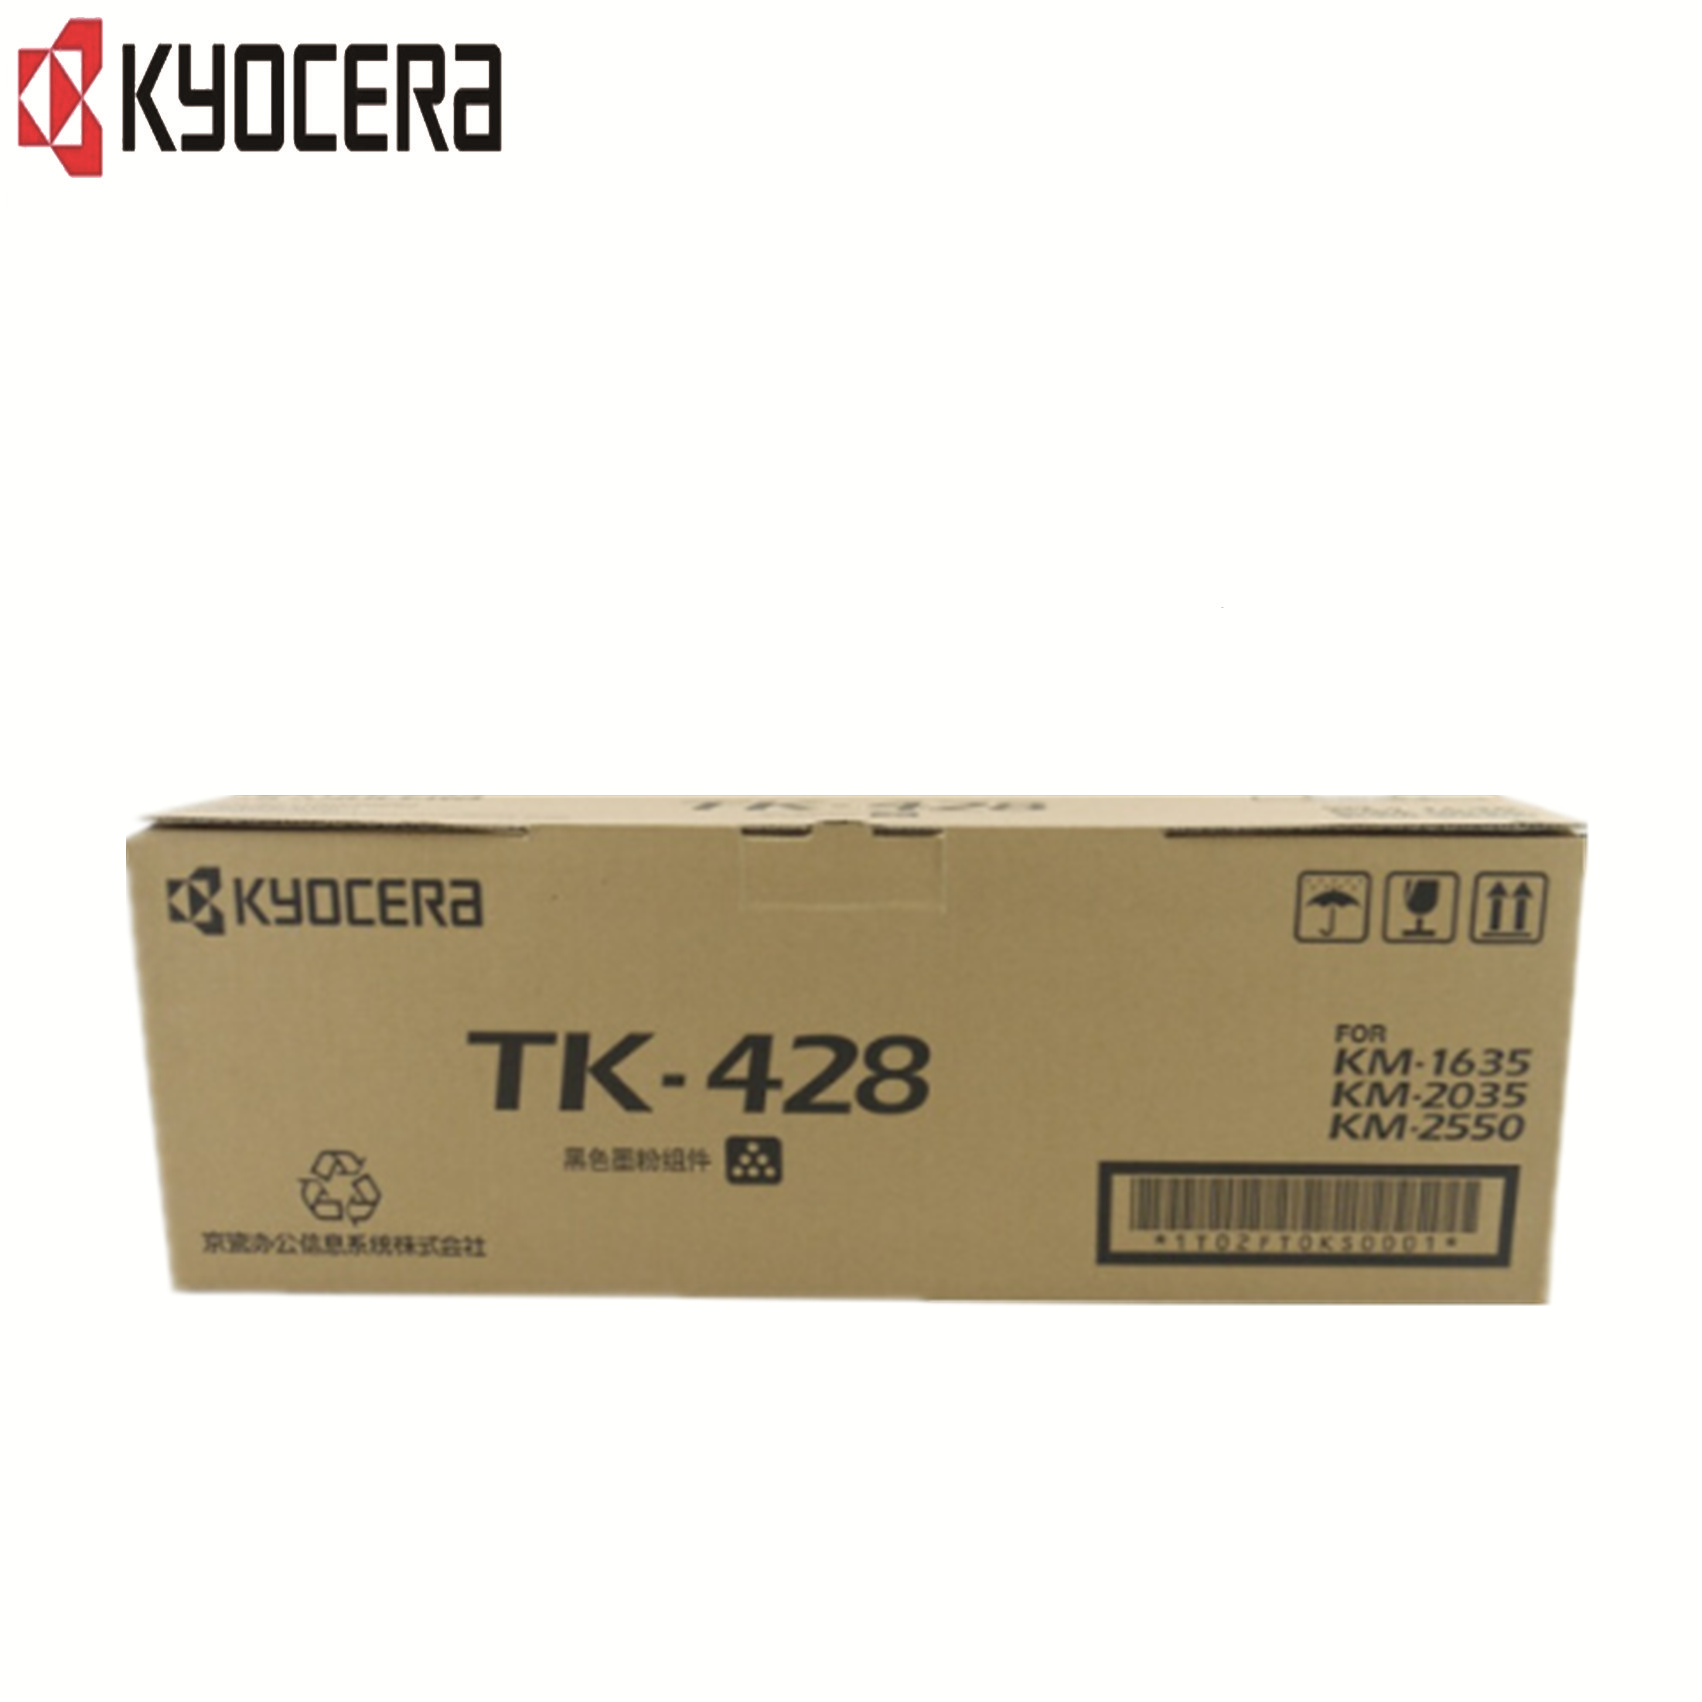 京瓷(KYOCERA)TK-428 粉盒 适用KM-1635/2035/2550复合机 hs